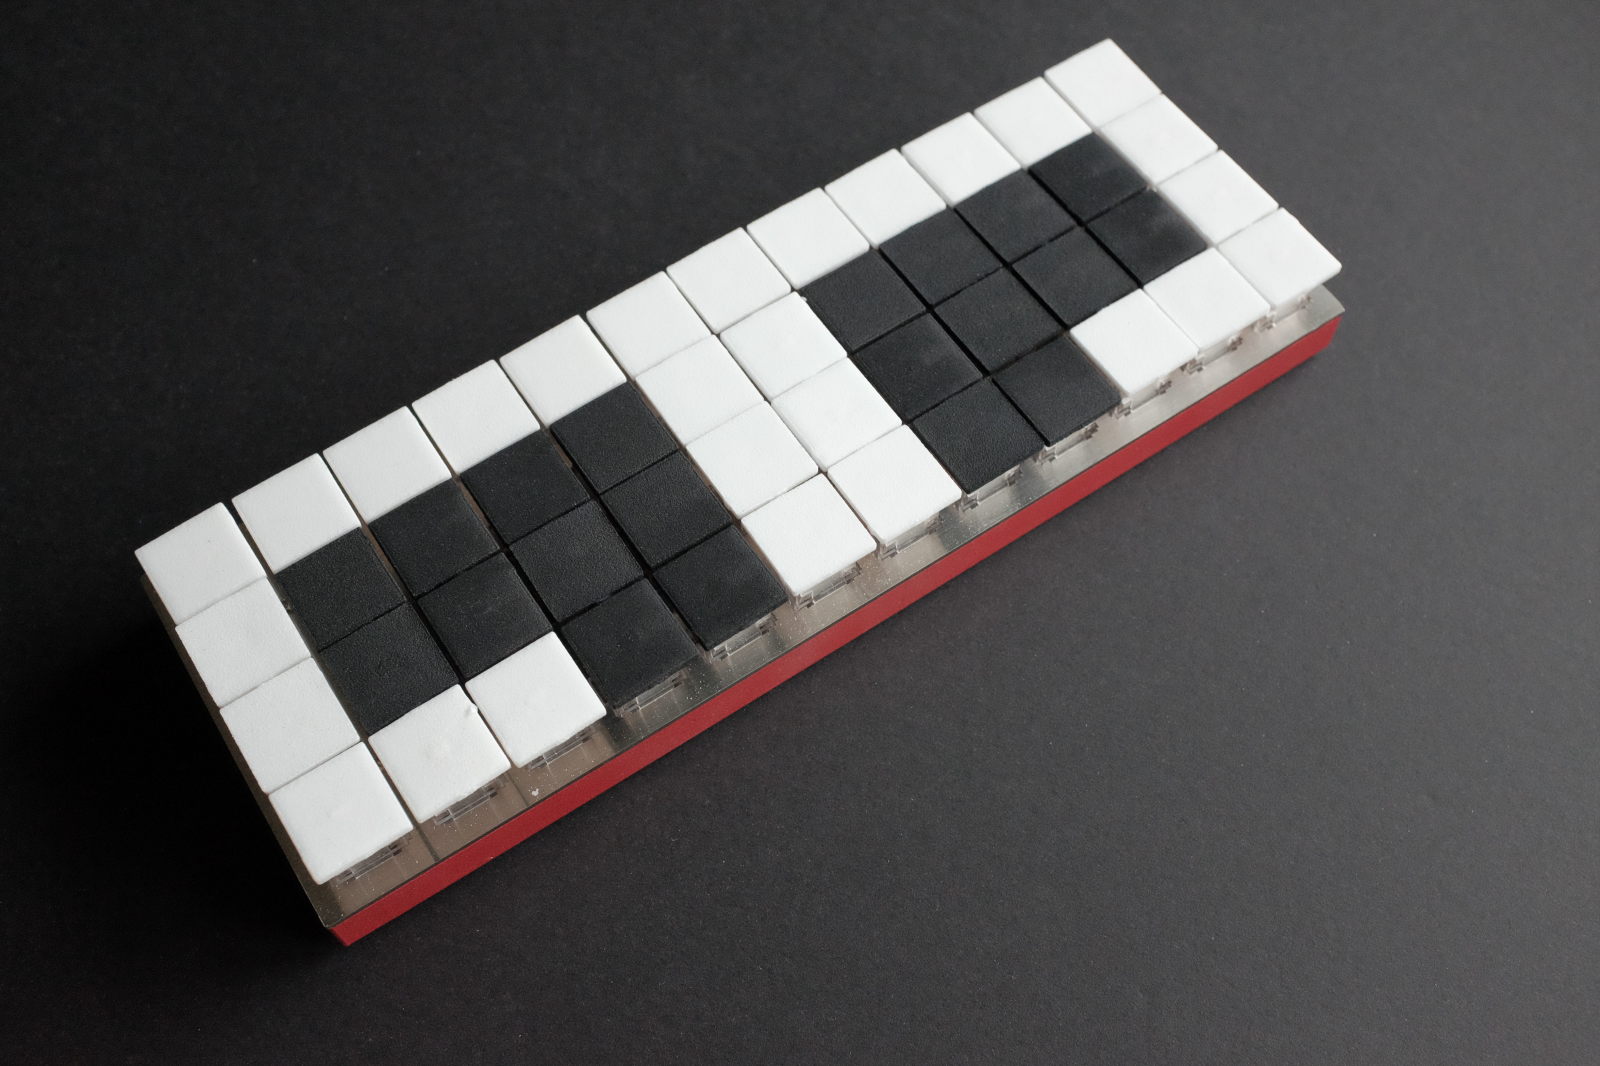 planck steno with 3D keycaps